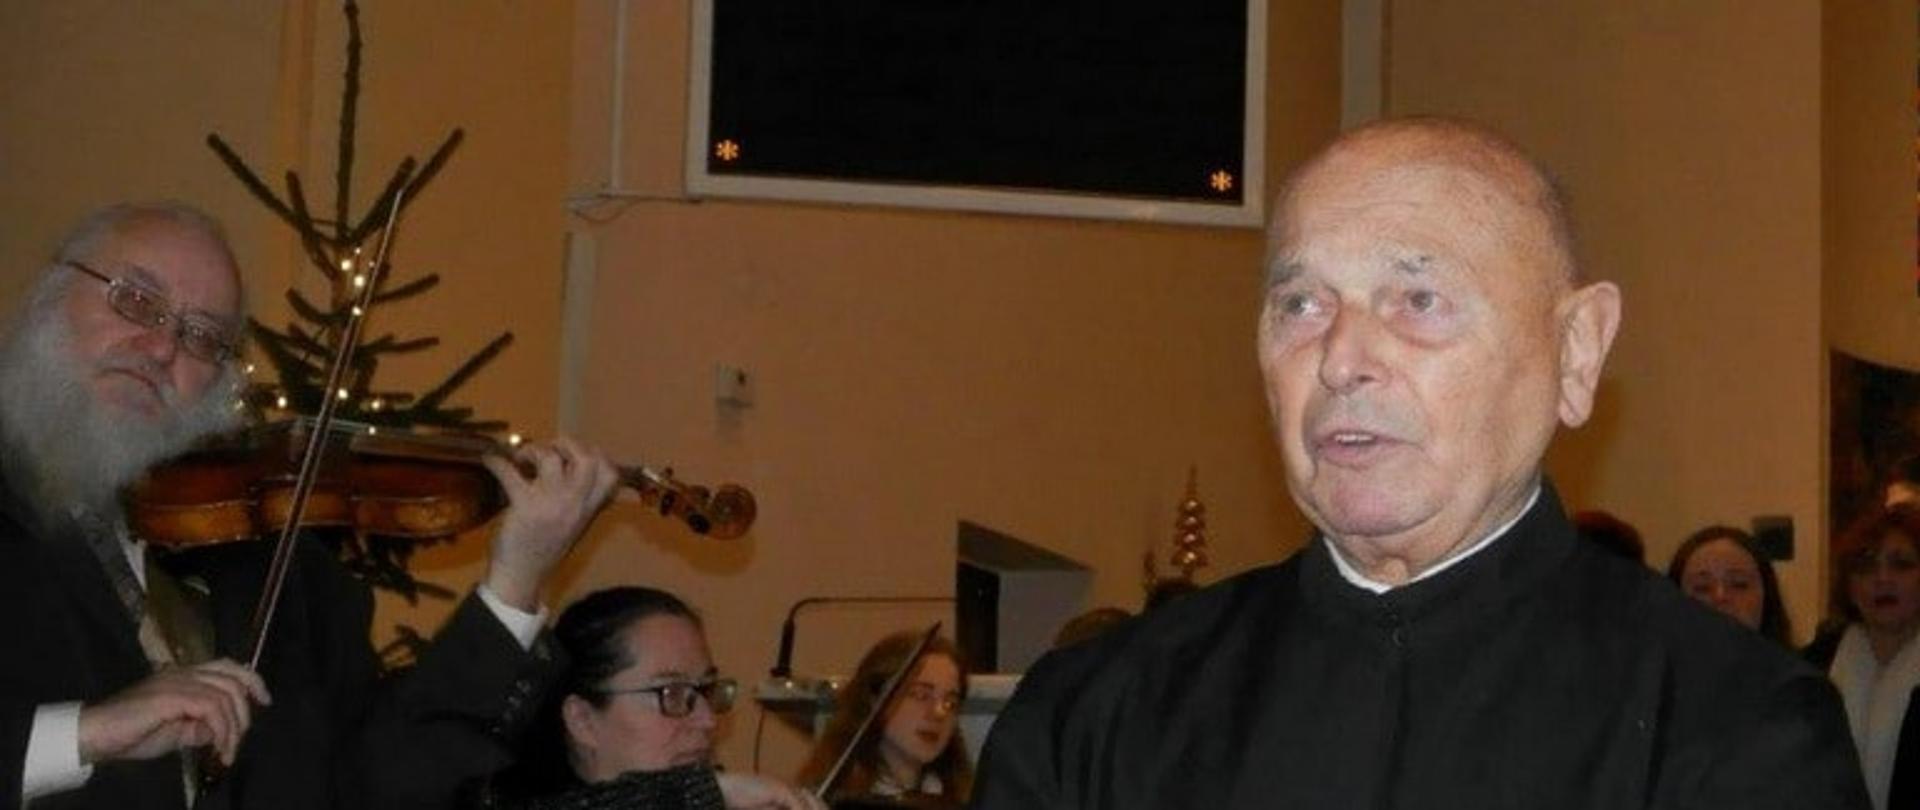 Zdjęcie przedstawiające księdza Wilczyńskiego w sutannie, w trakcie koncertu, w tle muzycy grający na skrzypcach.